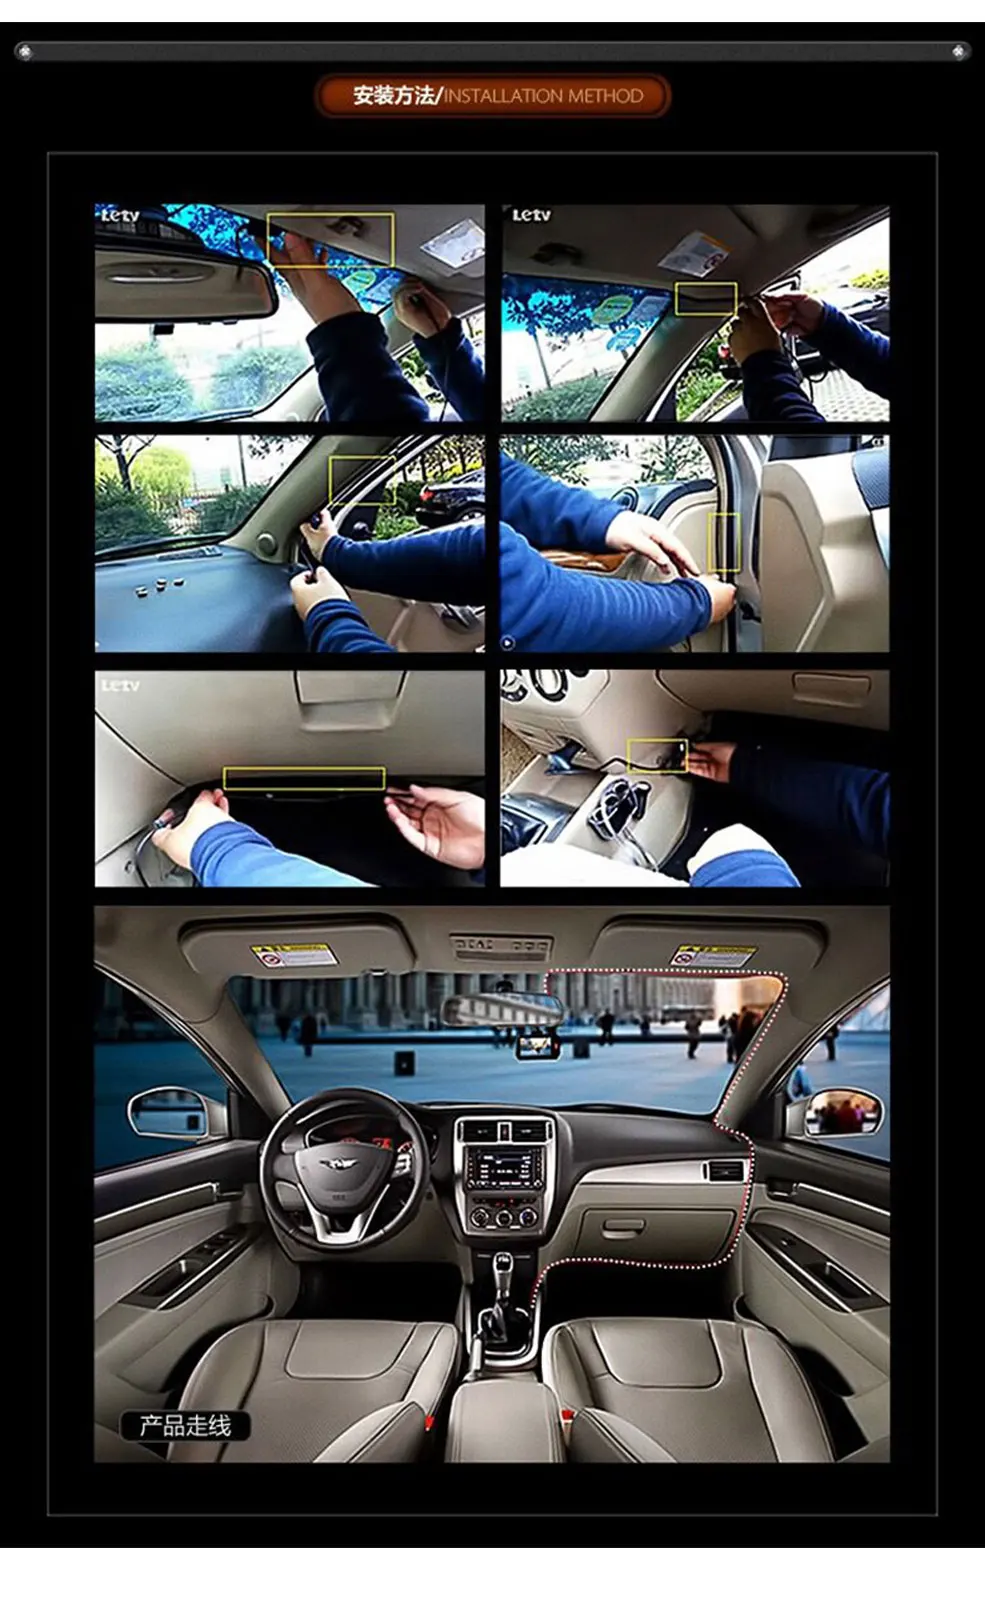 PARASOLANT автомобильные аксессуары 4,0 дюймов ips Экран автомобиля Камера двойной Запись тире Камера градусов T810 тире Видеорегистраторы для автомобилей видеорегистратор